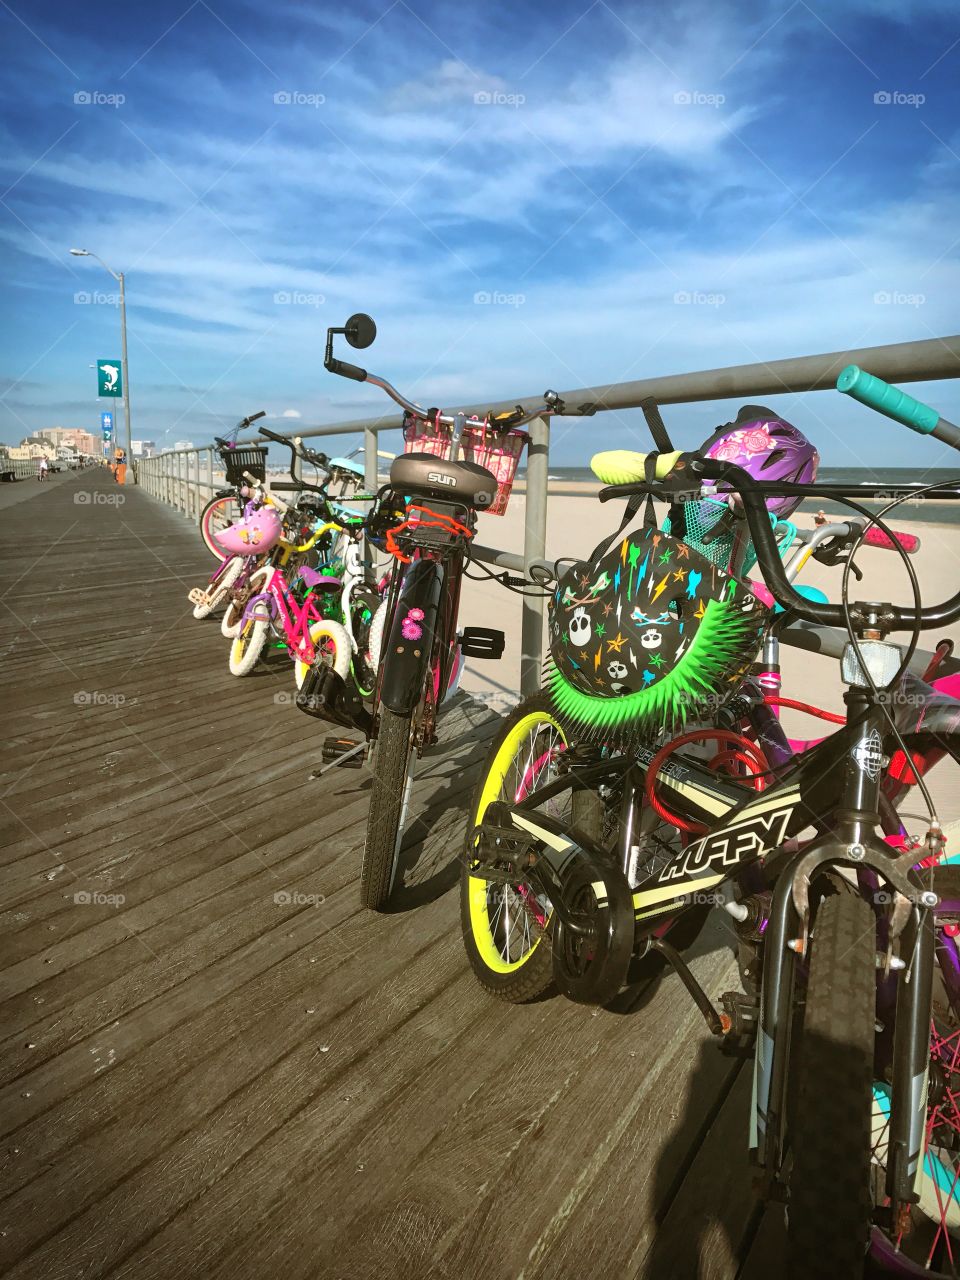 Bikes on the boardwalk